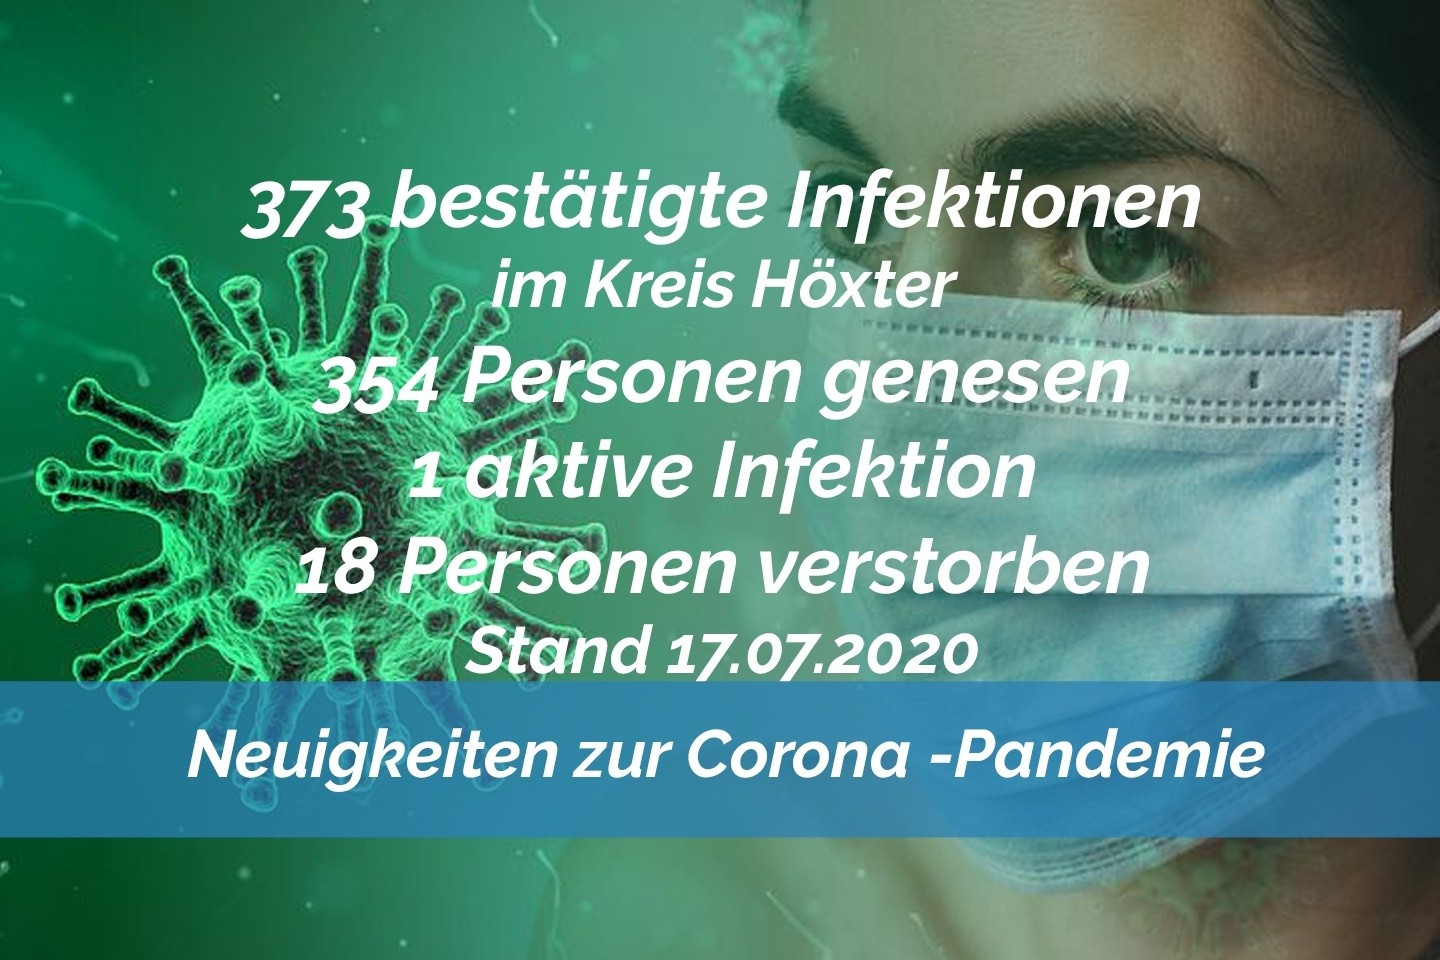 Update vom 17. Juli: 373 bestätigte Infektionen mit dem neuen Coronavirus im Kreis Höxter